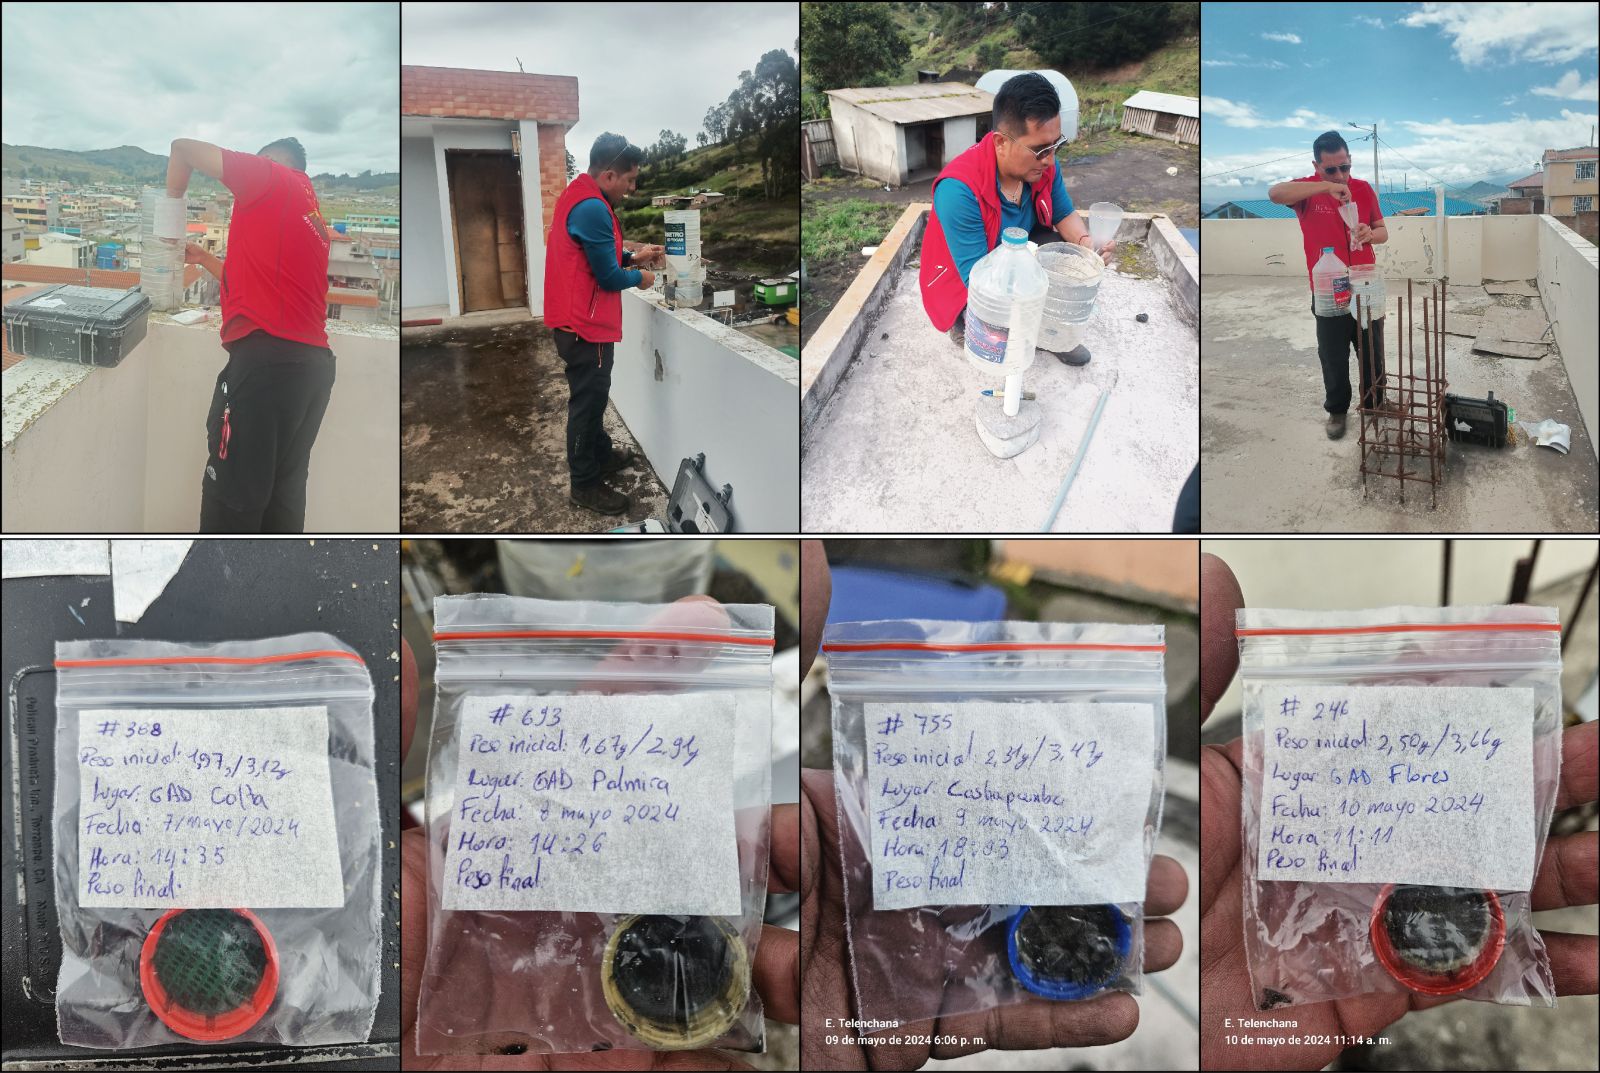 Recolección de ceniza y mantenimiento de la red de cenizómetros del volcán Sangay, provincia de Chimborazo